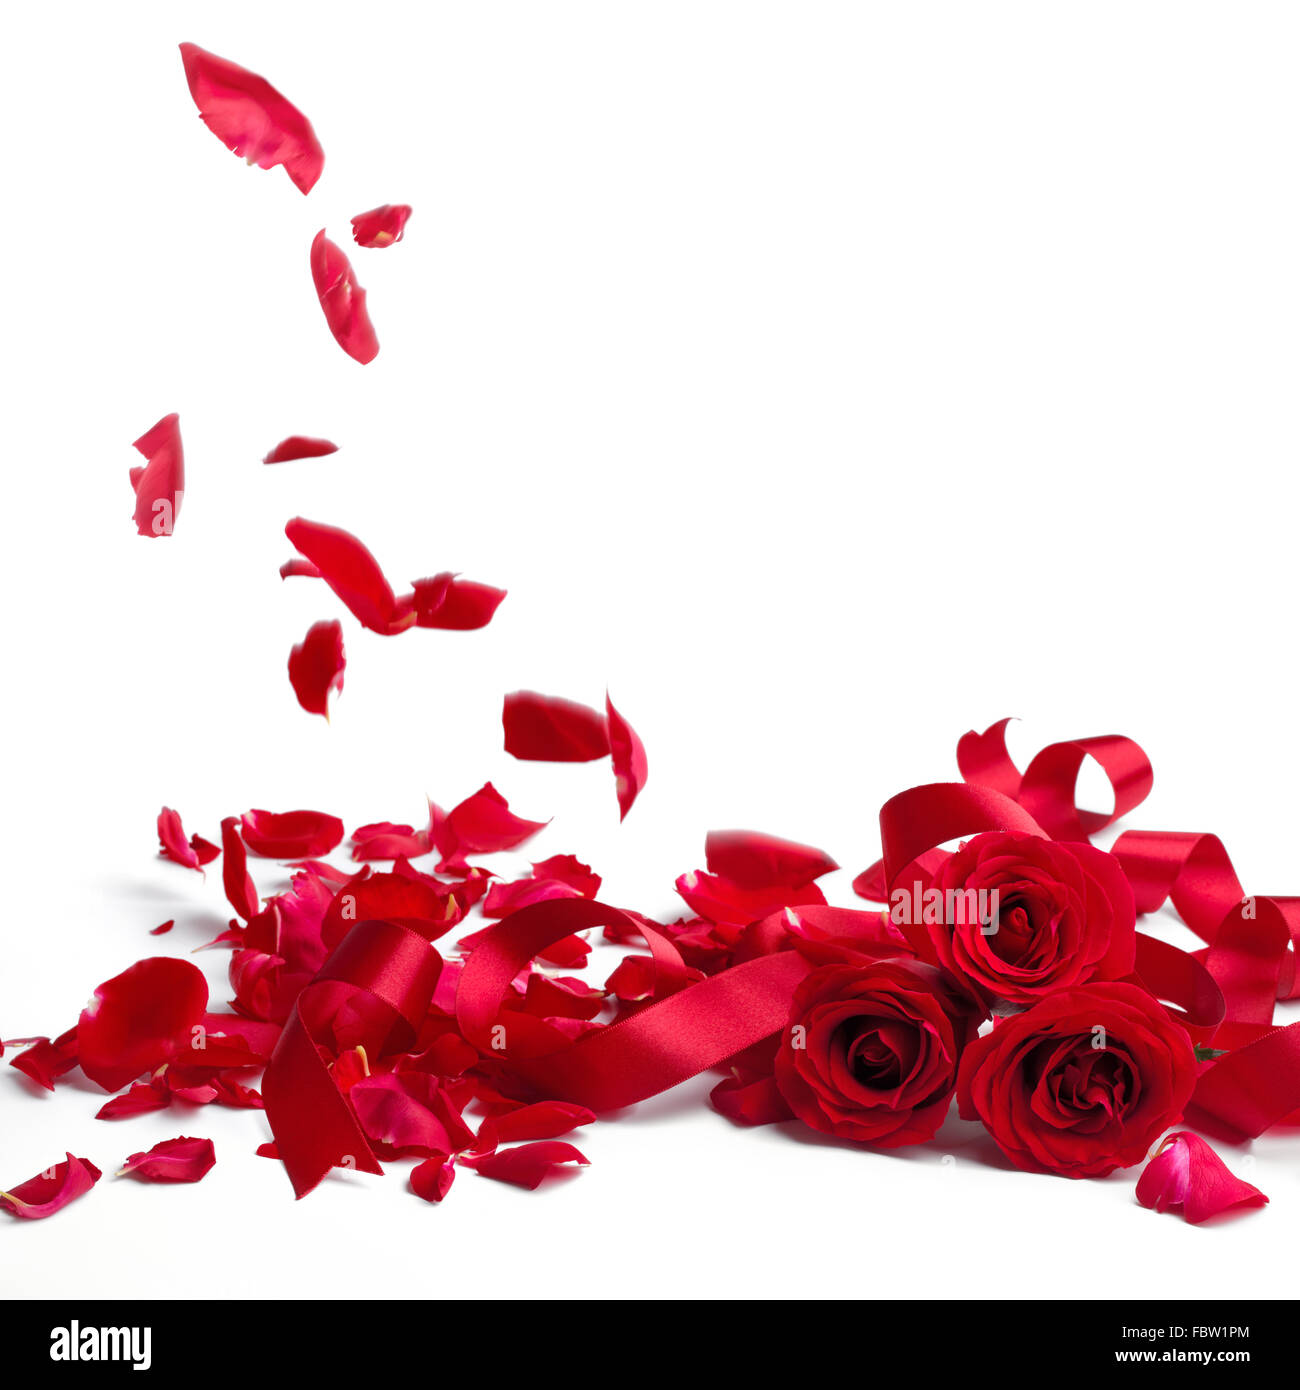 Des roses rouges et des pétales de rose sur fond blanc,Valentines Day concept. Banque D'Images